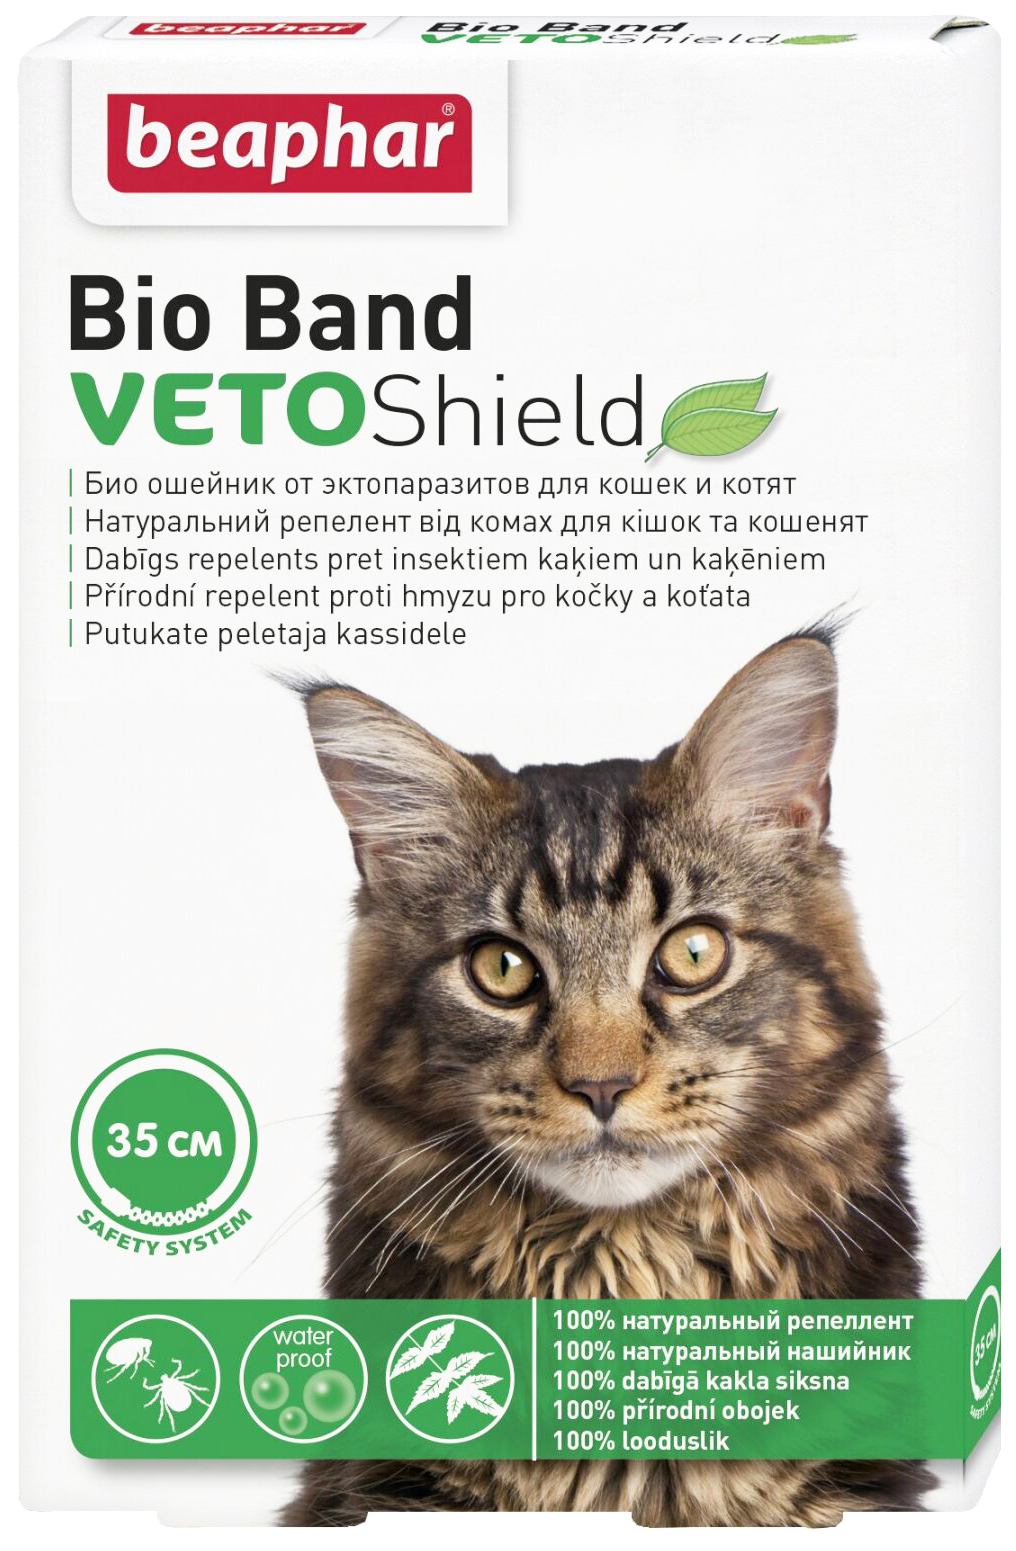 Ошейник от блох, клещей, комаров для кошек Beaphar VETO Shield Bio Band зеленый, 35 см